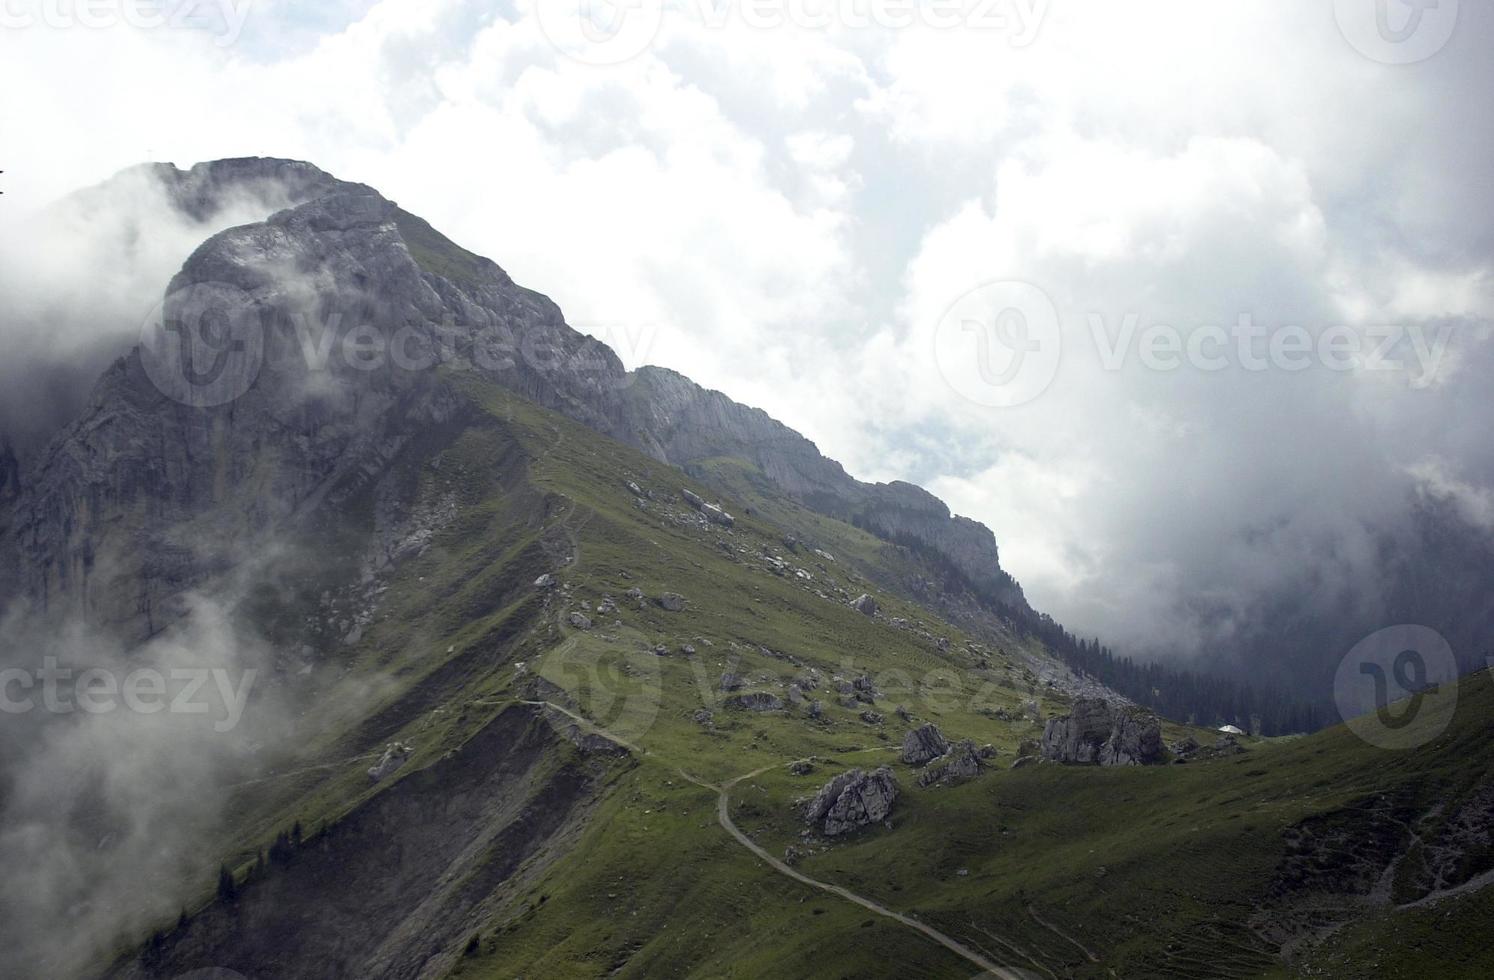 Swiss Alps photo